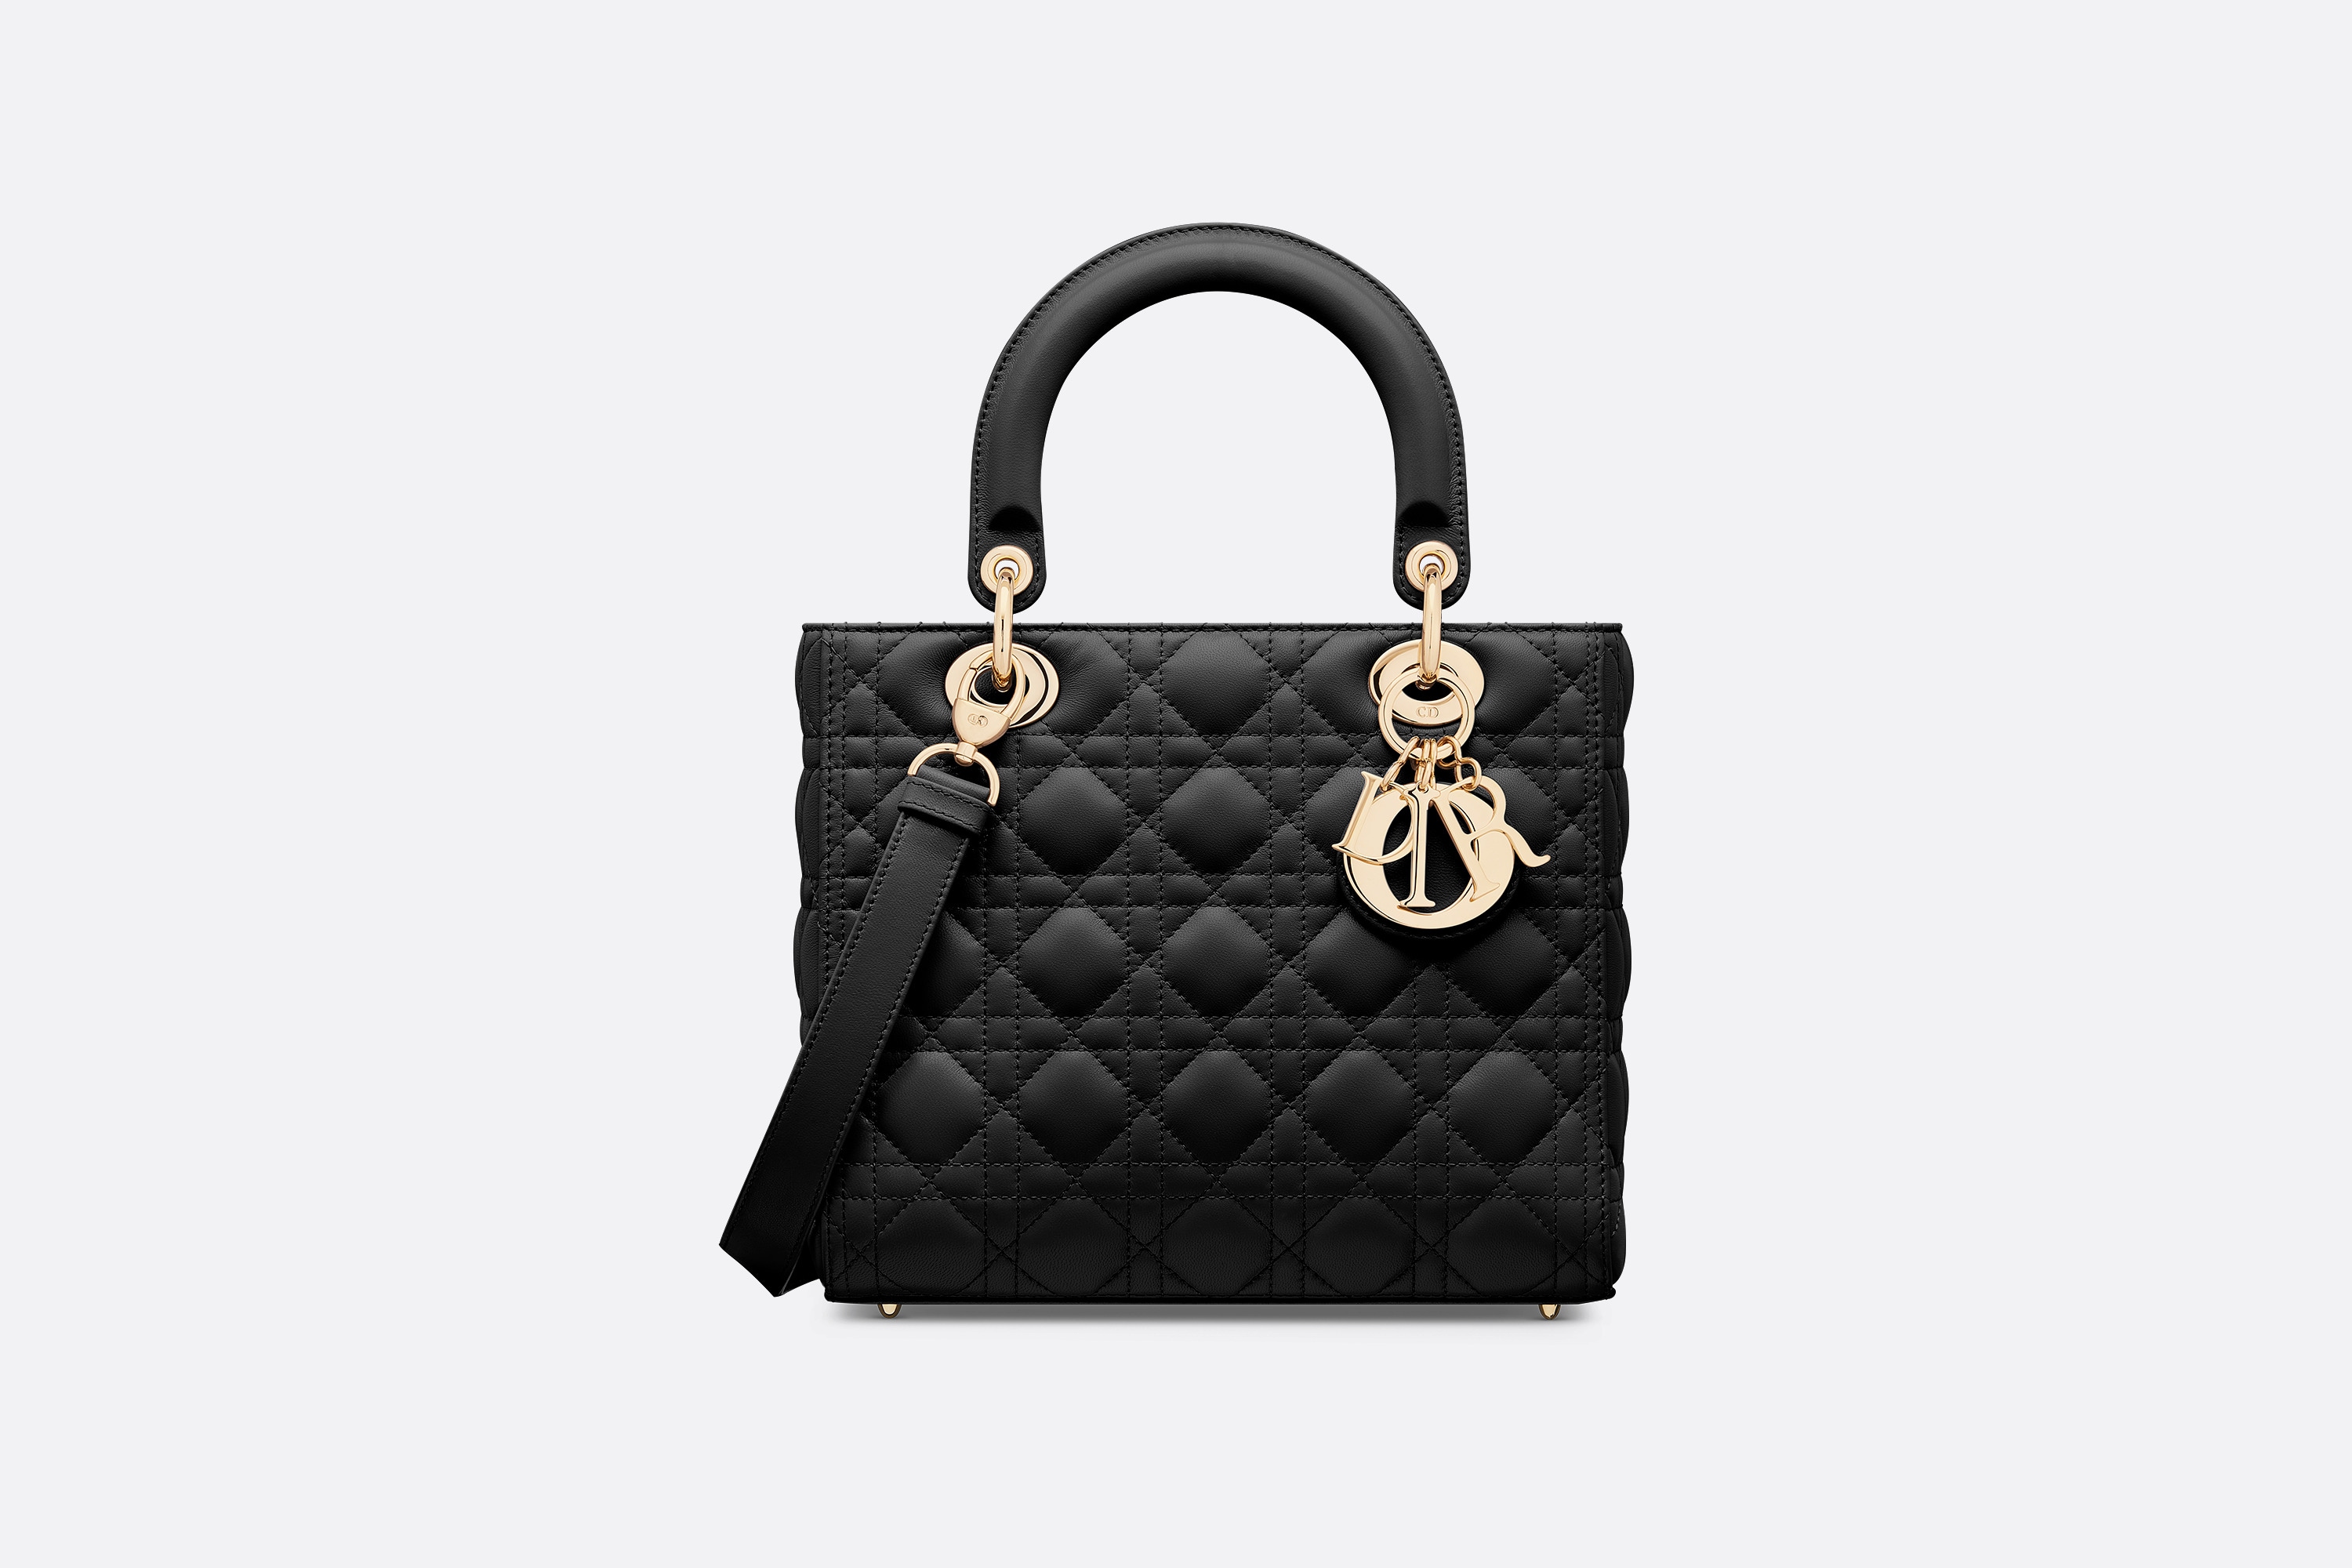 Medium Lady Dior Bag Black Cannage Lambskin | Dior Us